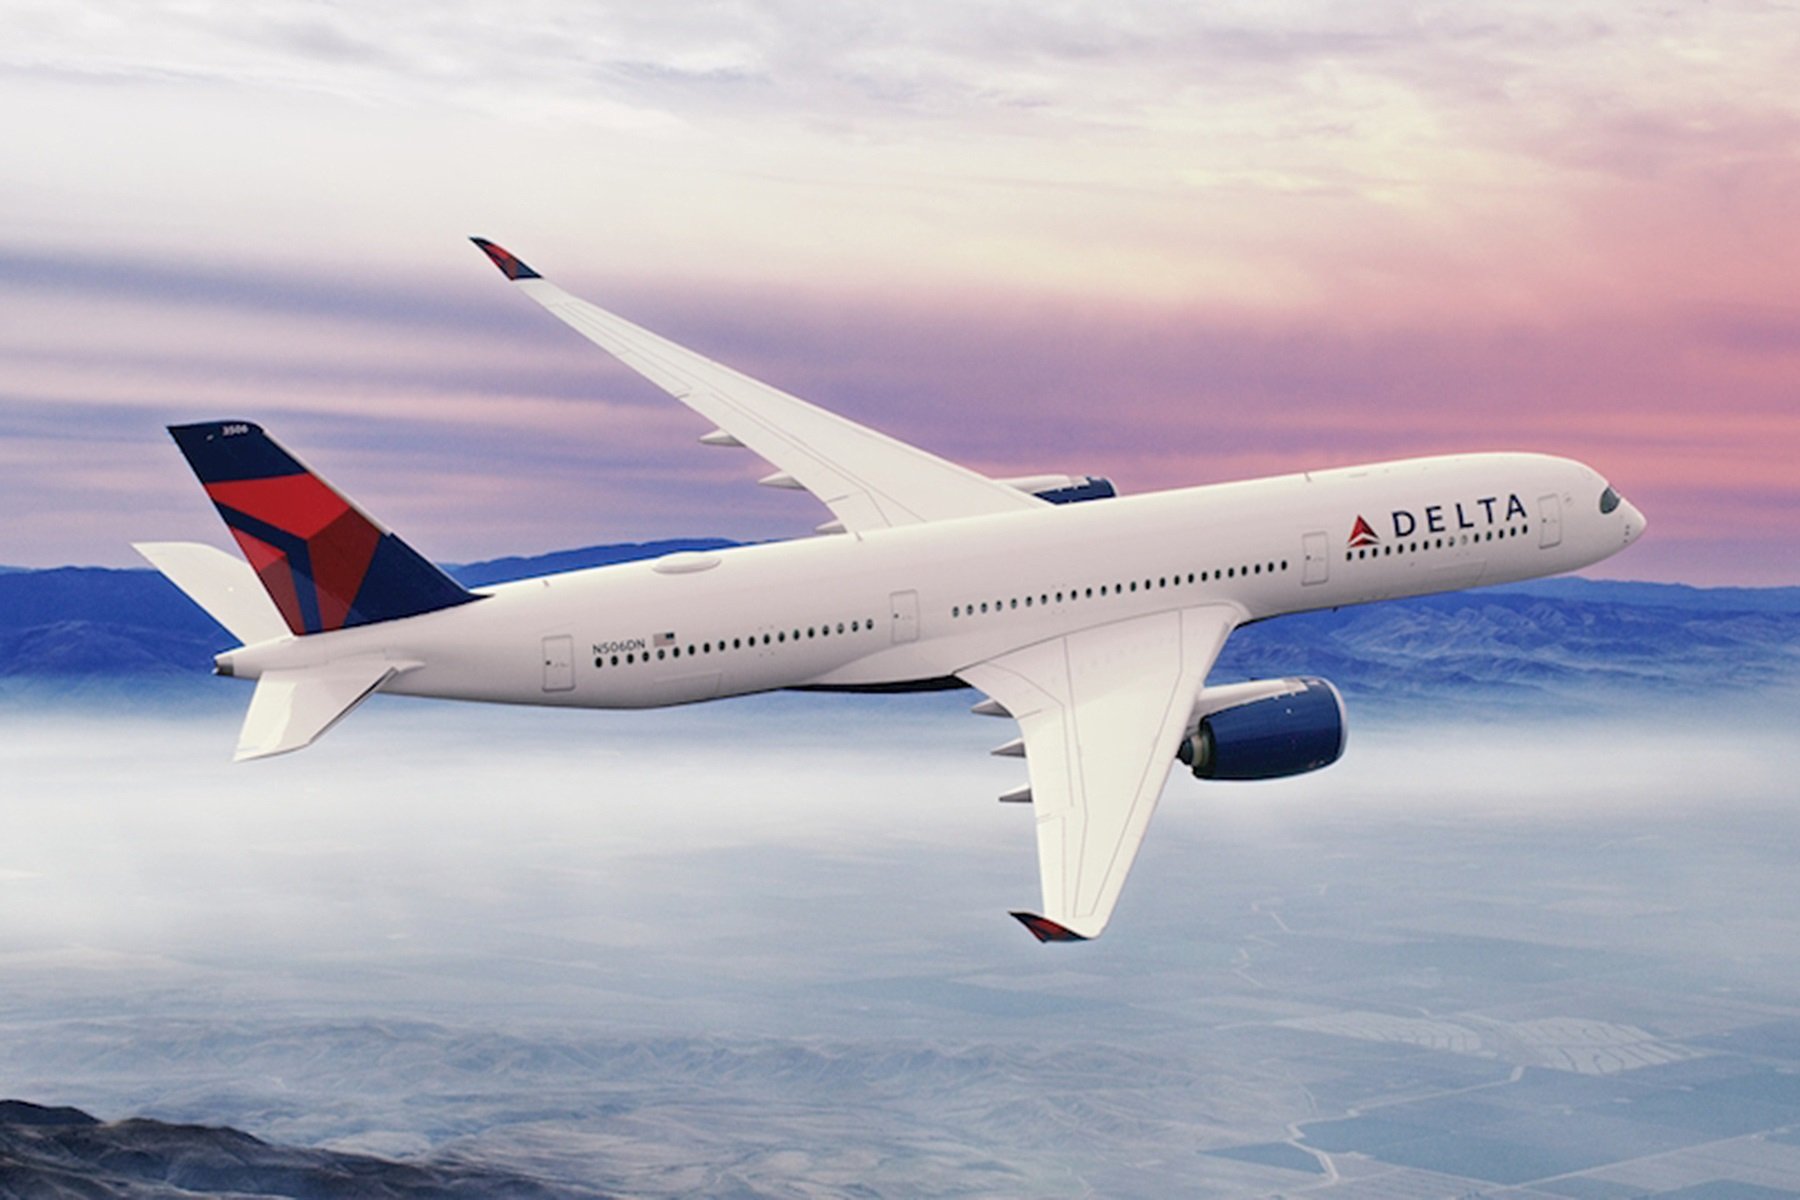 Η Delta Airlines σταματά τις πτήσεις προς τη Σαγκάη λόγω νέων κανόνων για τον COVID-19